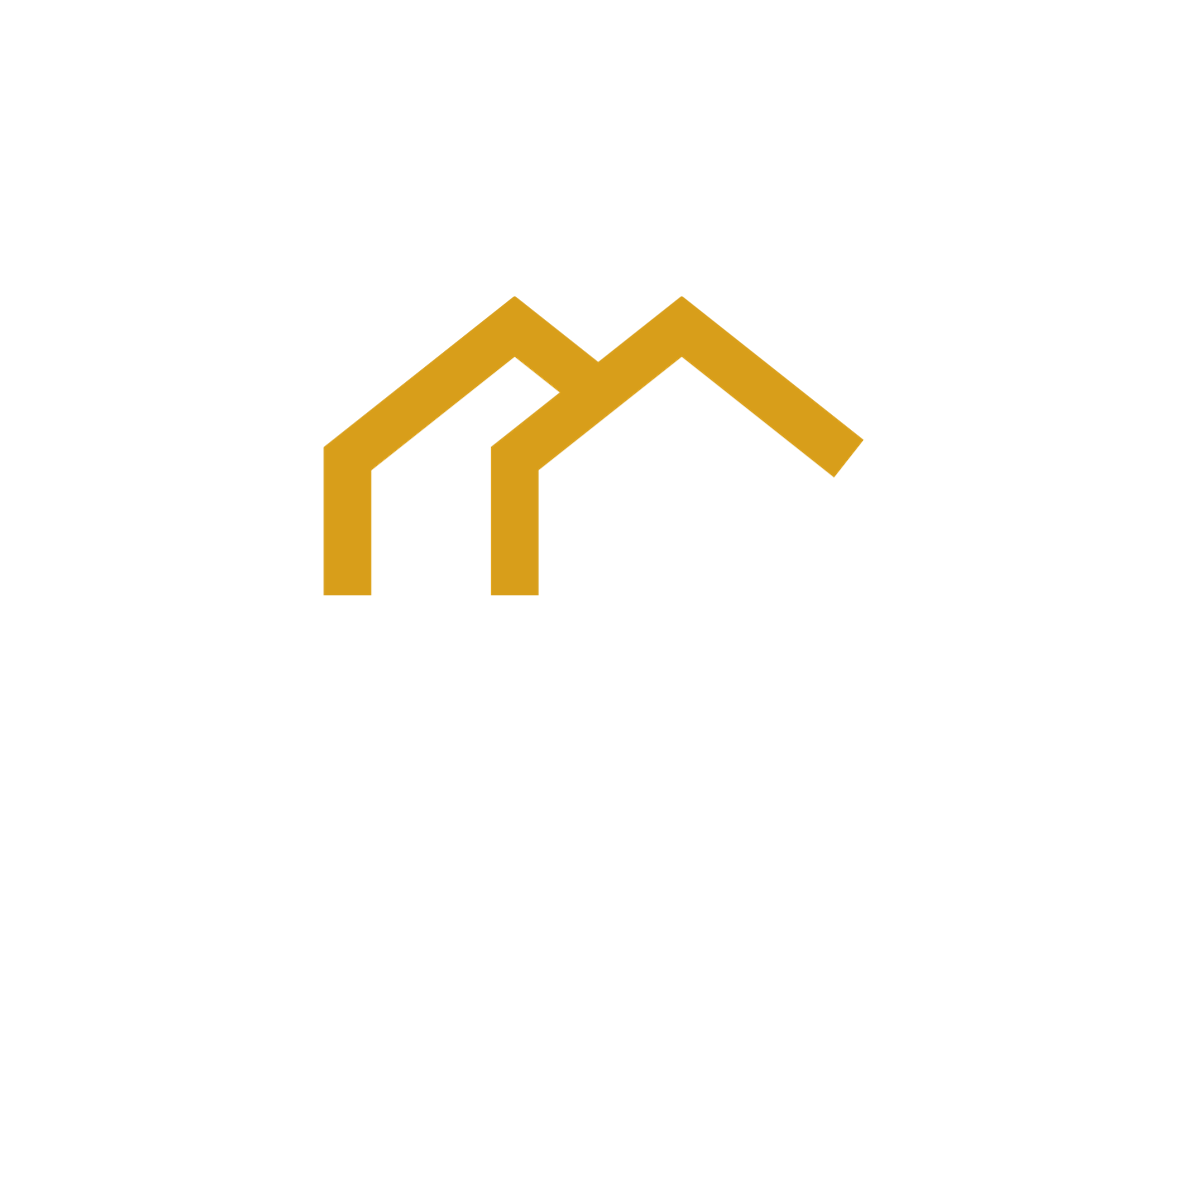 www.anayare.com